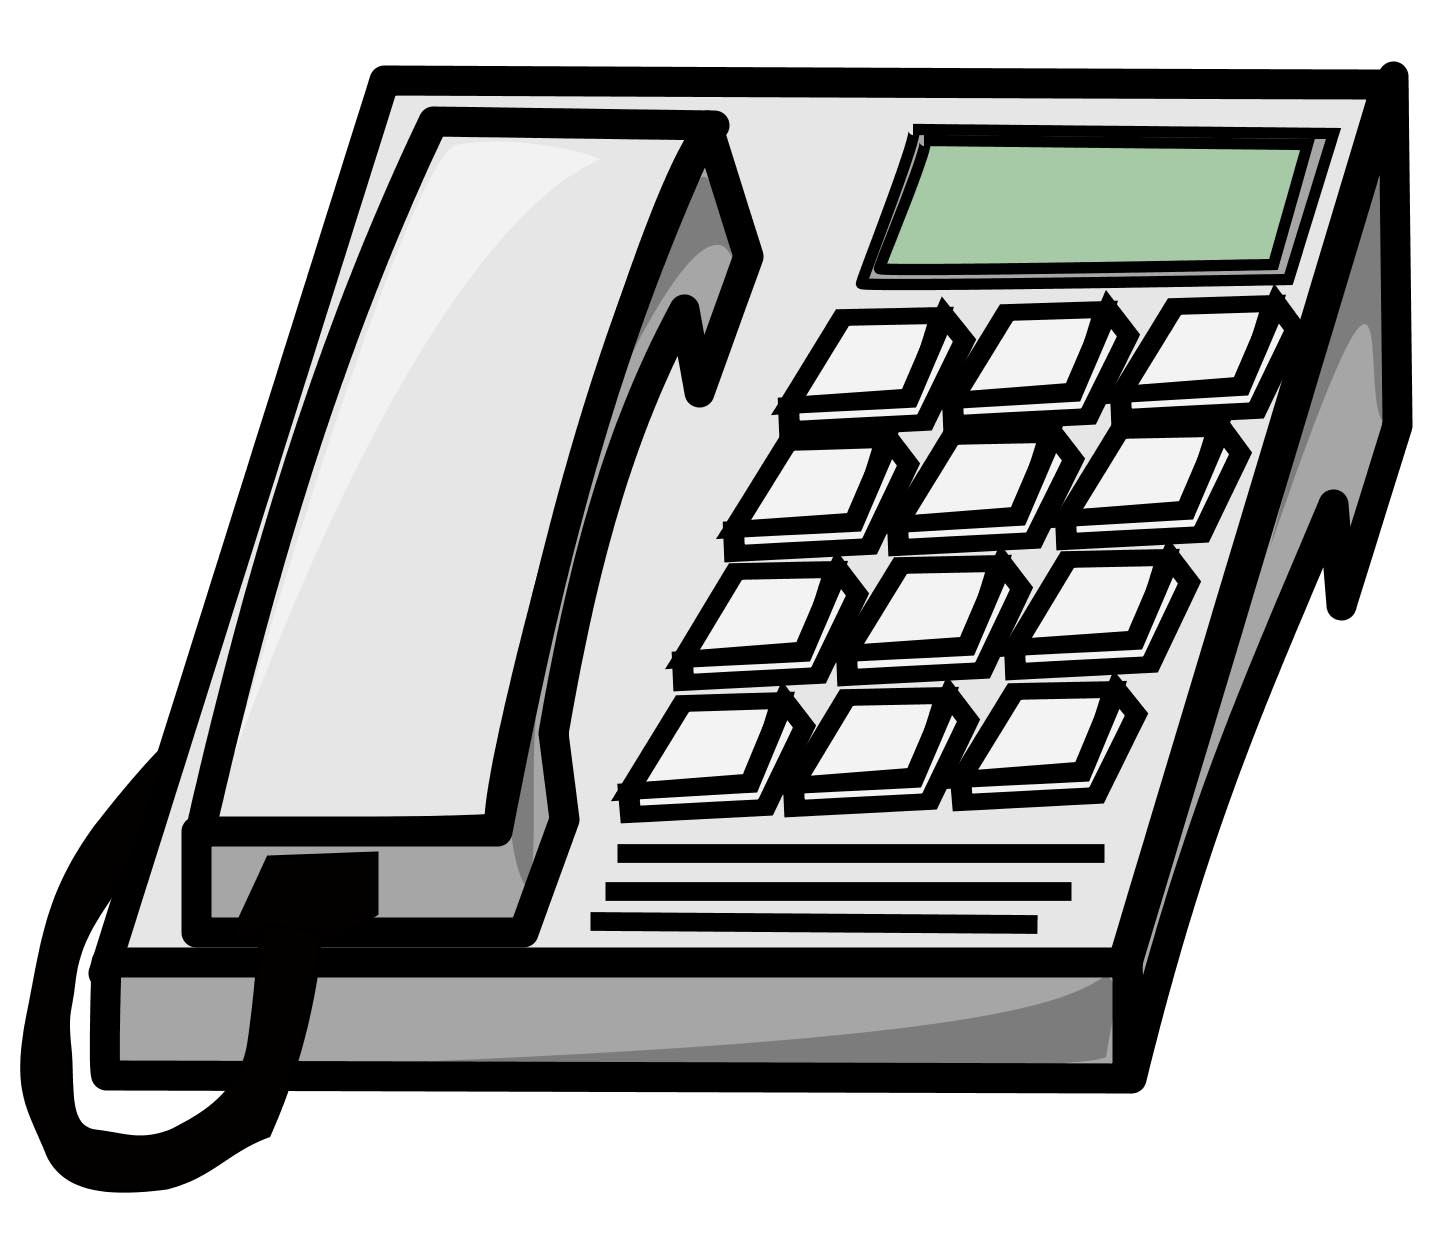 Telephone office phone clipar